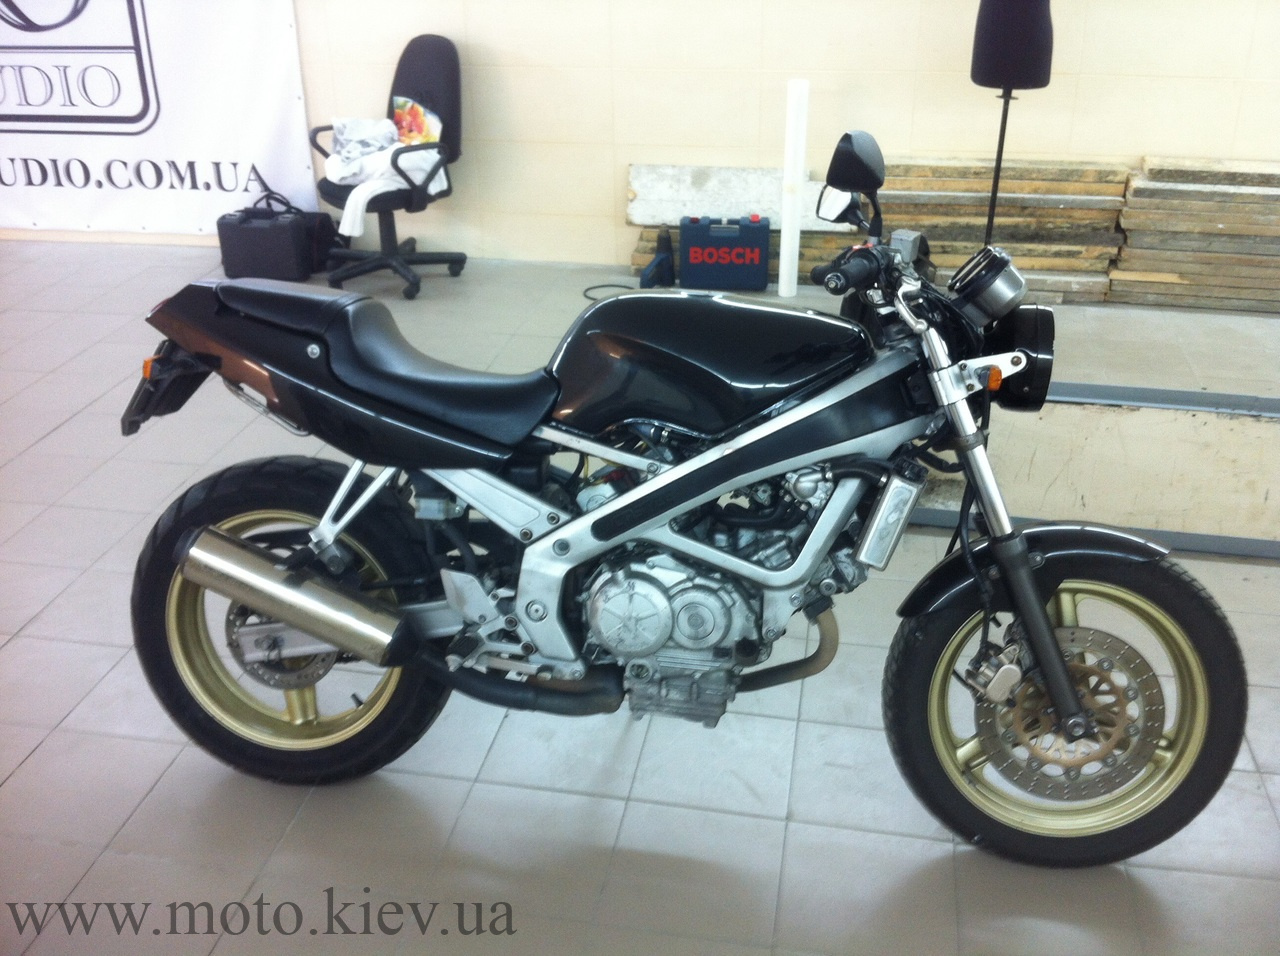 Мотоцикл Honda VT 250 spada 250 АА0809АВ База